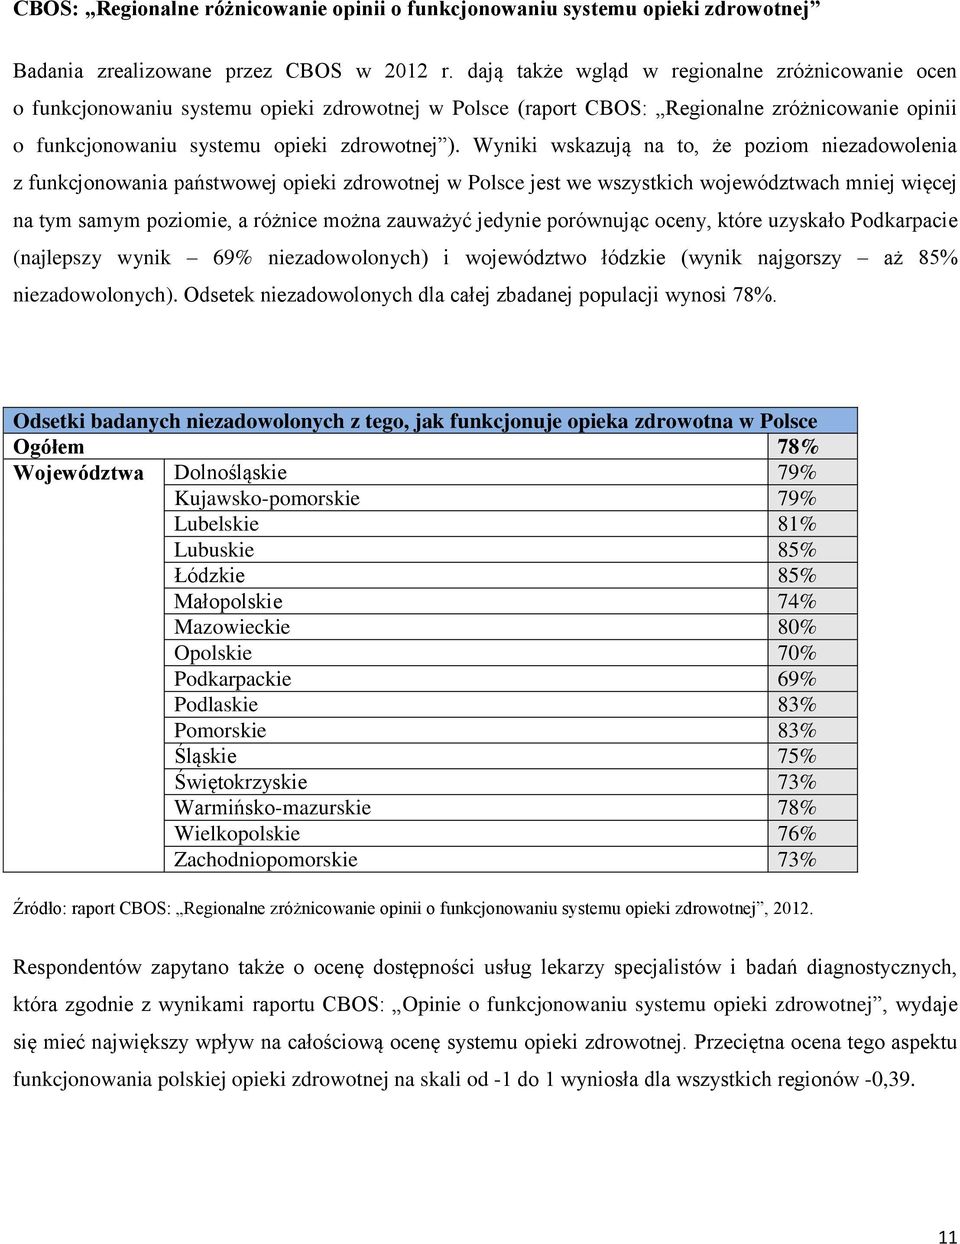 Wyniki wskazują na to, że poziom niezadowolenia z funkcjonowania państwowej opieki zdrowotnej w Polsce jest we wszystkich województwach mniej więcej na tym samym poziomie, a różnice można zauważyć